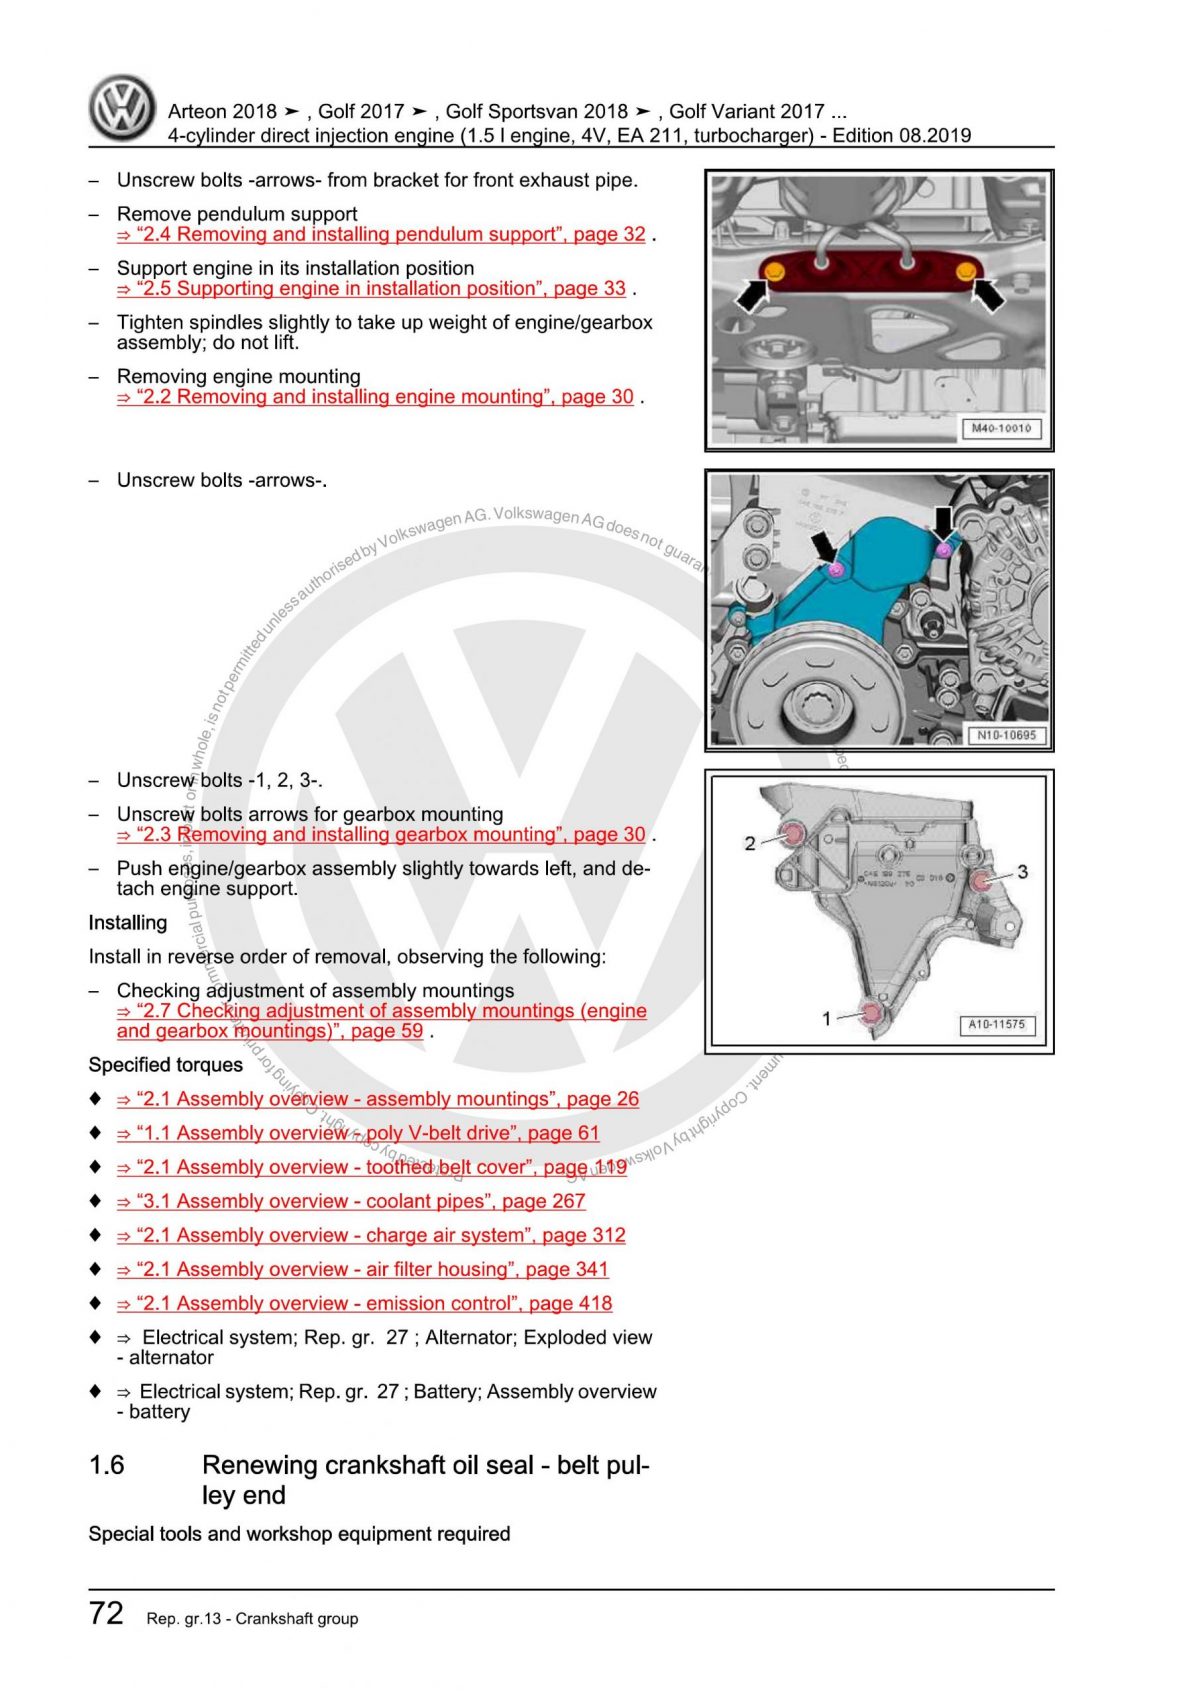 VW 4-Cylinder Direct Injection Engine (1.5 l Engine, 4V, EA 211, Turbocharger) OEM Workshop Manual